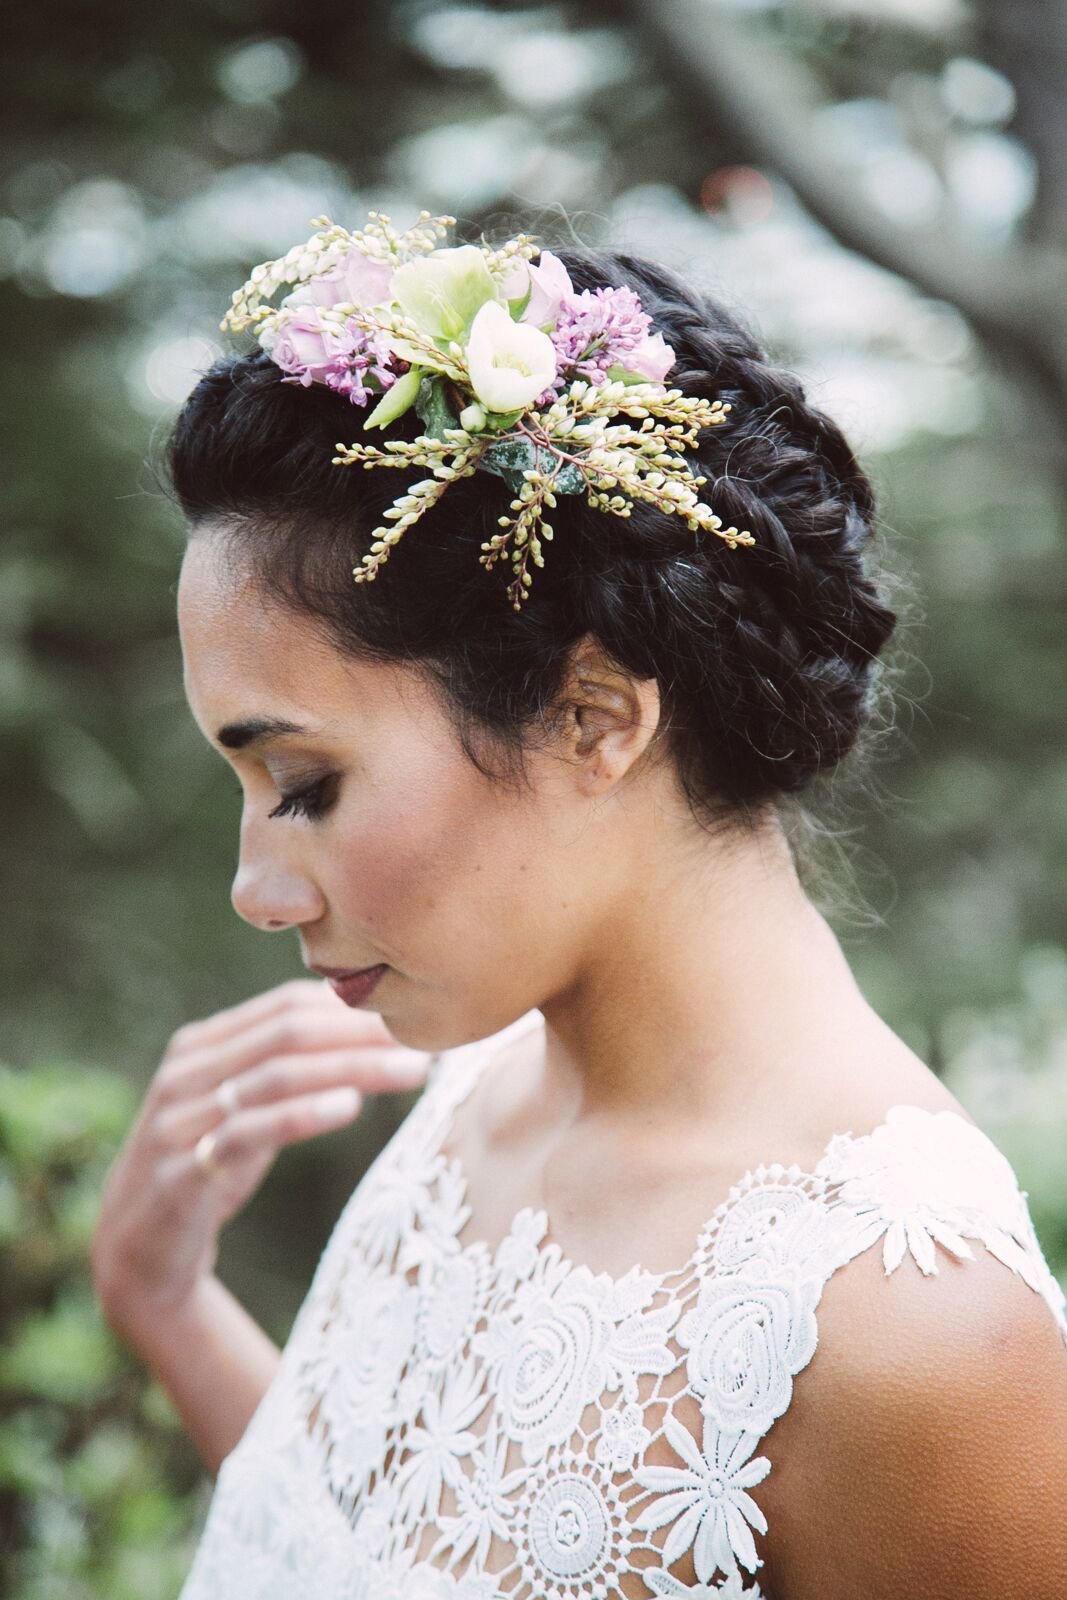 Bridal Hair Flowers - Wedding Flowers for Hair